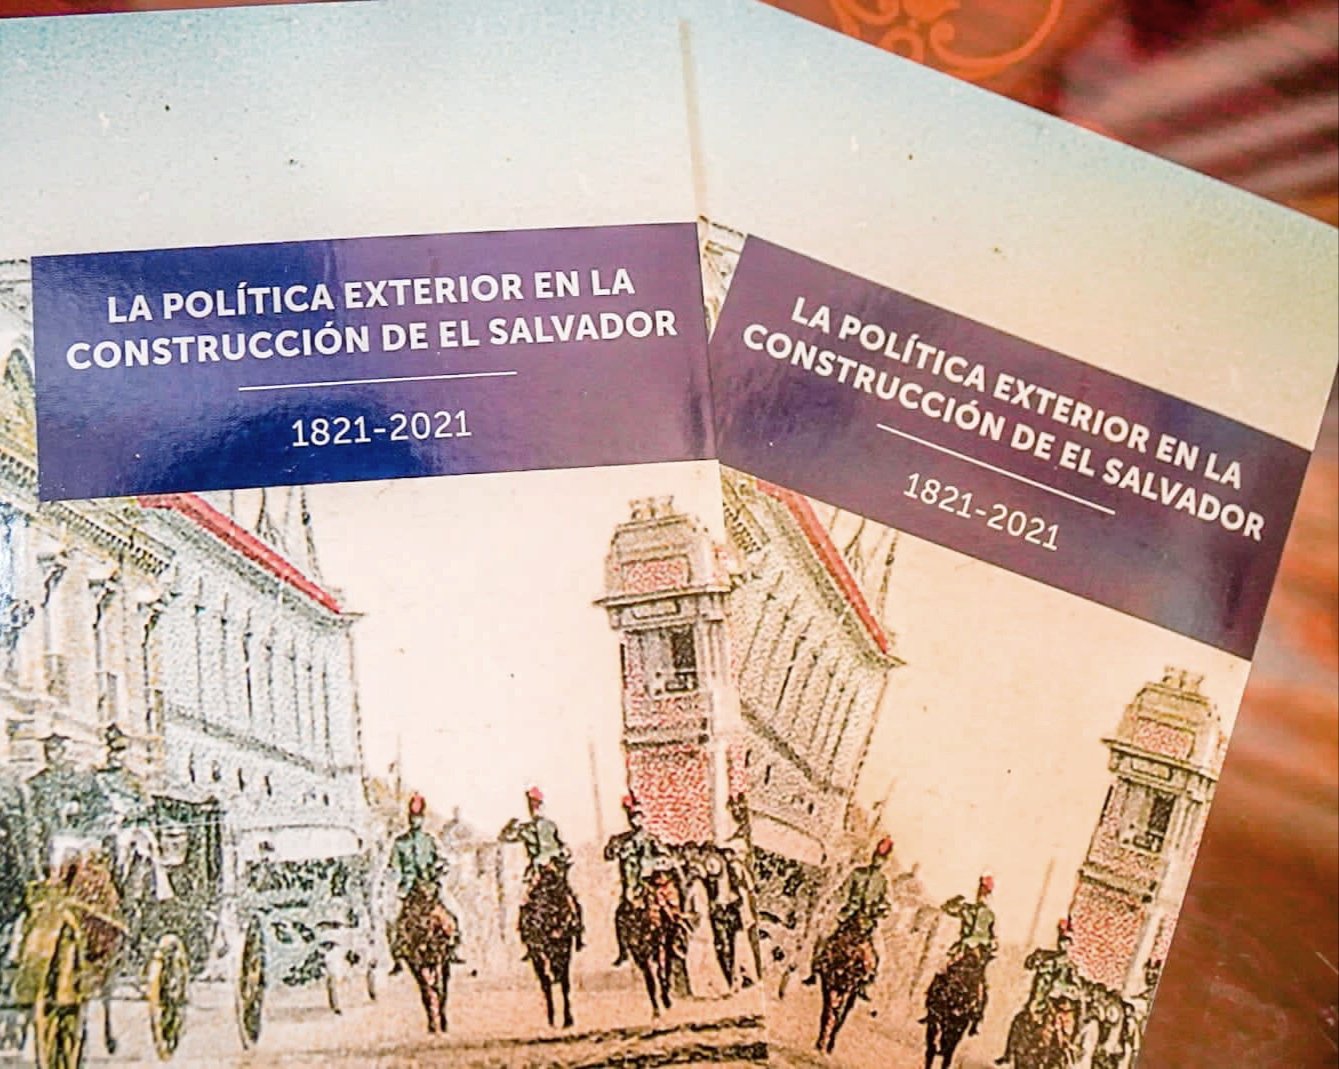 3 NoV./222- Presentación del libro de la Política Exterior en la construcción de El Salvador.